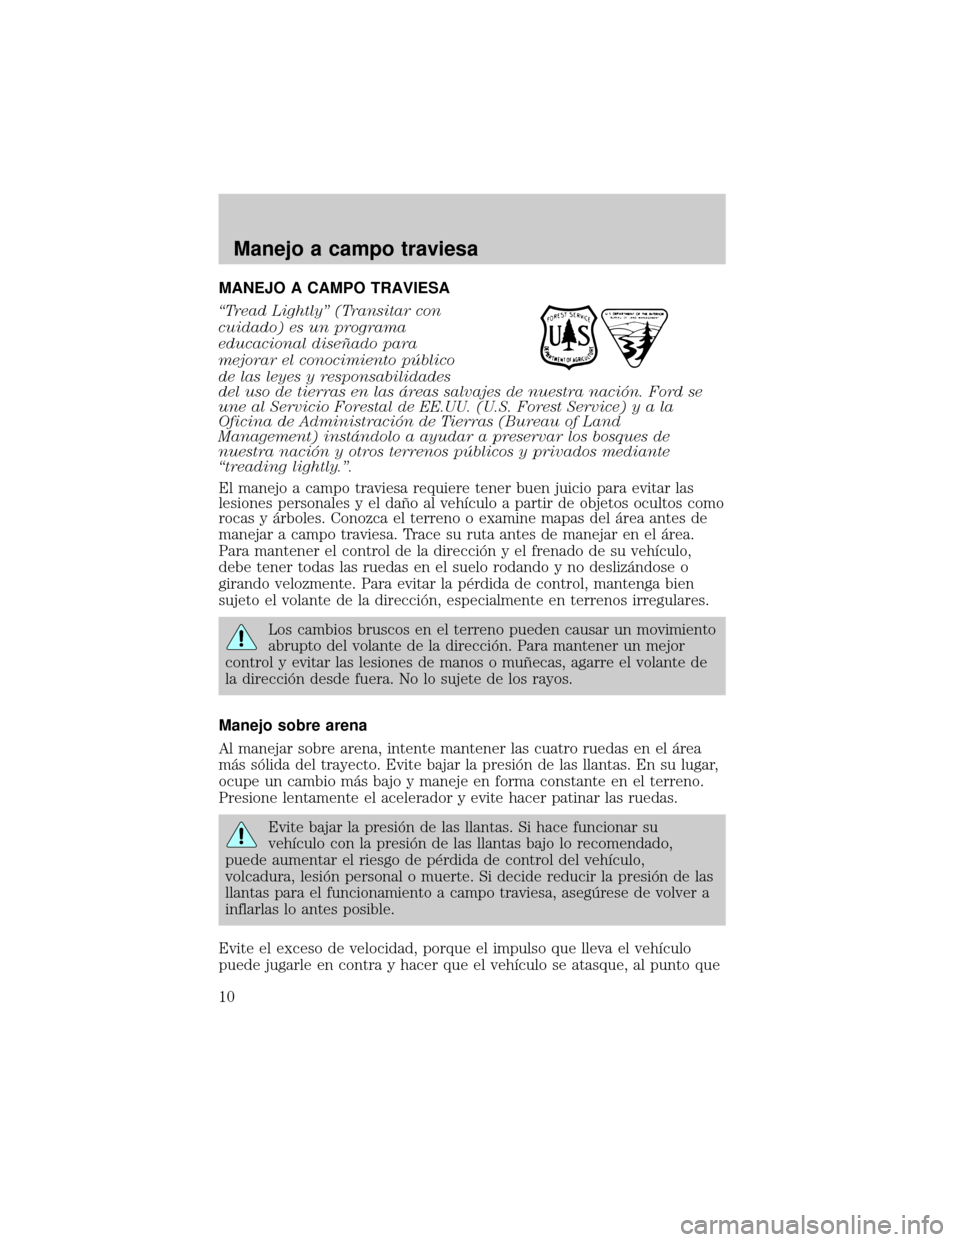 Mercury Mariner 2007  Manual de Usuario (in Spanish) MANEJO A CAMPO TRAVIESA
ªTread Lightlyº (Transitar con
cuidado) es un programa
educacional diseÞado para
mejorar el conocimiento pìblico
de las leyes y responsabilidades
del uso de tierras en las 